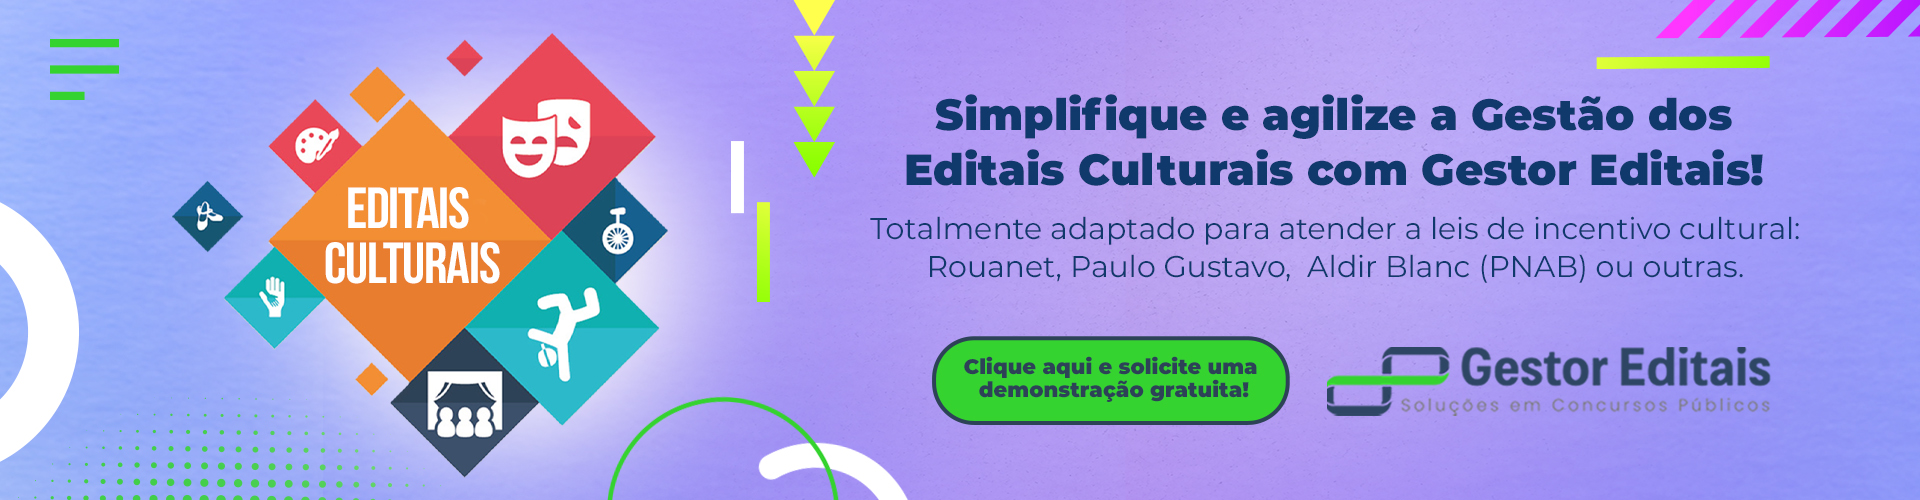 Gestão de Editais Culturais Simplificada é com o Gestor Editais!